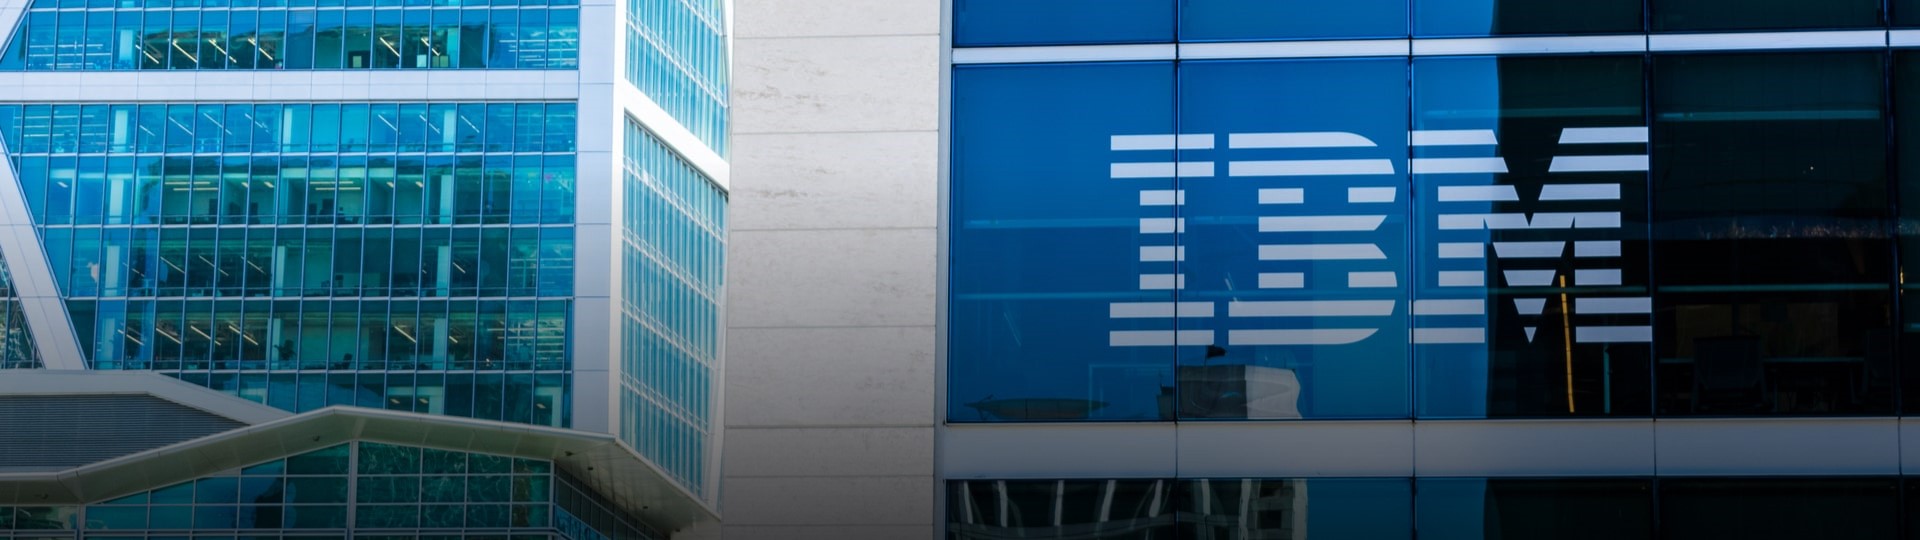 Společnost IBM zvažuje prodej své zdravotnické divize